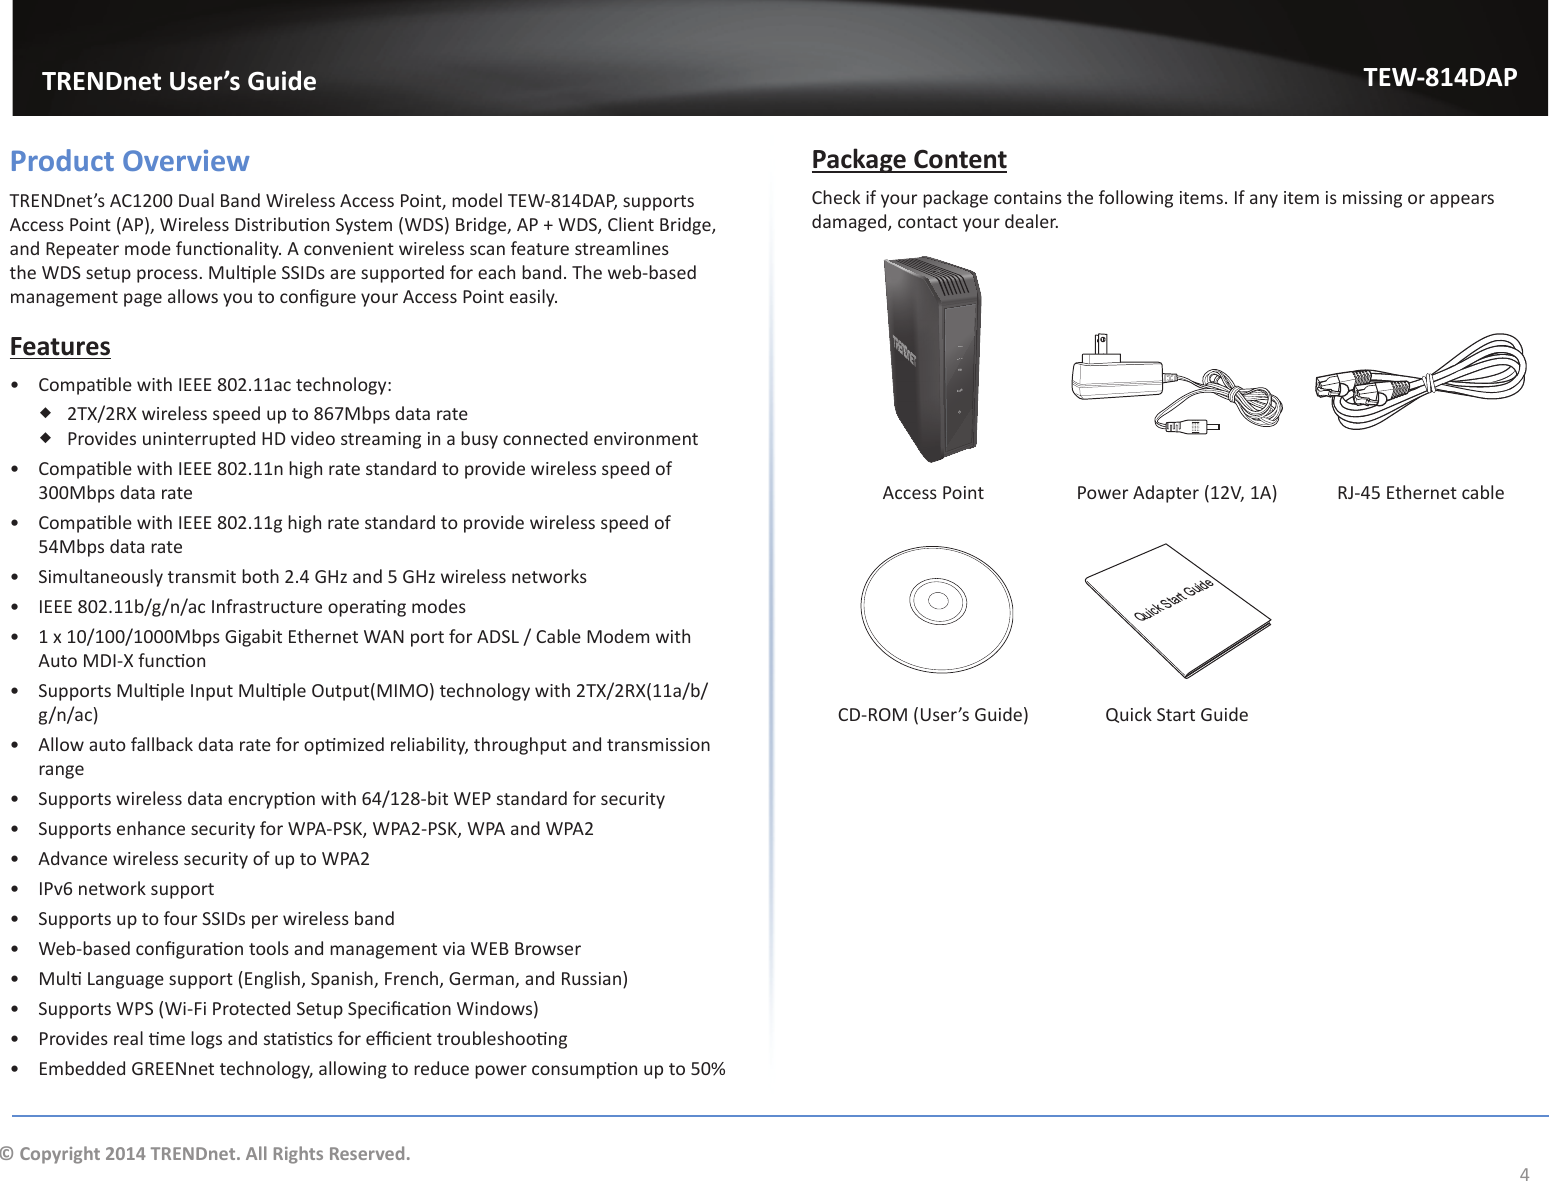                   TRENDnet User’s GuideTEW-814DAP4© Copyright 2014 TRENDnet. All Rights Reserved.Product OverviewdZEŶĞƚ͛ƐϭϮϬϬƵĂůĂŶĚtŝƌĞůĞƐƐĐĐĞƐƐWŽŝŶƚ͕ŵŽĚĞůdtͲϴϭϰW͕ƐƵƉƉŽƌƚƐĐĐĞƐƐWŽŝŶƚ;WͿ͕tŝƌĞůĞƐƐŝƐƚƌŝďƵƟŽŶ^ǇƐƚĞŵ;t^ͿƌŝĚŐĞ͕Wнt^͕ůŝĞŶƚƌŝĚŐĞ͕ĂŶĚZĞƉĞĂƚĞƌŵŽĚĞĨƵŶĐƟŽŶĂůŝƚǇ͘ĐŽŶǀĞŶŝĞŶƚǁŝƌĞůĞƐƐƐĐĂŶĨĞĂƚƵƌĞƐƚƌĞĂŵůŝŶĞƐƚŚĞt^ƐĞƚƵƉƉƌŽĐĞƐƐ͘DƵůƟƉůĞ^^/ƐĂƌĞƐƵƉƉŽƌƚĞĚĨŽƌĞĂĐŚďĂŶĚ͘dŚĞǁĞďͲďĂƐĞĚŵĂŶĂŐĞŵĞŶƚƉĂŐĞĂůůŽǁƐǇŽƵƚŽĐŽŶĮŐƵƌĞǇŽƵƌĐĐĞƐƐWŽŝŶƚĞĂƐŝůǇ͘Featuresͻ ŽŵƉĂƟďůĞǁŝƚŚ/ϴϬϮ͘ϭϭĂĐƚĞĐŚŶŽůŽŐǇ͗ ϮdyͬϮZyǁŝƌĞůĞƐƐƐƉĞĞĚƵƉƚŽϴϲϳDďƉƐĚĂƚĂƌĂƚĞ WƌŽǀŝĚĞƐƵŶŝŶƚĞƌƌƵƉƚĞĚ,ǀŝĚĞŽƐƚƌĞĂŵŝŶŐŝŶĂďƵƐǇĐŽŶŶĞĐƚĞĚĞŶǀŝƌŽŶŵĞŶƚͻ ŽŵƉĂƟďůĞǁŝƚŚ/ϴϬϮ͘ϭϭŶŚŝŐŚƌĂƚĞƐƚĂŶĚĂƌĚƚŽƉƌŽǀŝĚĞǁŝƌĞůĞƐƐƐƉĞĞĚŽĨϯϬϬDďƉƐĚĂƚĂƌĂƚĞͻ ŽŵƉĂƟďůĞǁŝƚŚ/ϴϬϮ͘ϭϭŐŚŝŐŚƌĂƚĞƐƚĂŶĚĂƌĚƚŽƉƌŽǀŝĚĞǁŝƌĞůĞƐƐƐƉĞĞĚŽĨϱϰDďƉƐĚĂƚĂƌĂƚĞͻ ^ŝŵƵůƚĂŶĞŽƵƐůǇƚƌĂŶƐŵŝƚďŽƚŚϮ͘ϰ&apos;,ǌĂŶĚϱ&apos;,ǌǁŝƌĞůĞƐƐŶĞƚǁŽƌŬƐͻ /ϴϬϮ͘ϭϭďͬŐͬŶͬĂĐ/ŶĨƌĂƐƚƌƵĐƚƵƌĞŽƉĞƌĂƟŶŐŵŽĚĞƐͻ ϭǆϭϬͬϭϬϬͬϭϬϬϬDďƉƐ&apos;ŝŐĂďŝƚƚŚĞƌŶĞƚtEƉŽƌƚĨŽƌ^&gt;ͬĂďůĞDŽĚĞŵǁŝƚŚƵƚŽD/ͲyĨƵŶĐƟŽŶͻ ^ƵƉƉŽƌƚƐDƵůƟƉůĞ/ŶƉƵƚDƵůƟƉůĞKƵƚƉƵƚ;D/DKͿƚĞĐŚŶŽůŽŐǇǁŝƚŚϮdyͬϮZy;ϭϭĂͬďͬg/n/ac)ͻ ůůŽǁĂƵƚŽĨĂůůďĂĐŬĚĂƚĂƌĂƚĞĨŽƌŽƉƟŵŝǌĞĚƌĞůŝĂďŝůŝƚǇ͕ƚŚƌŽƵŐŚƉƵƚĂŶĚƚƌĂŶƐŵŝƐƐŝŽŶrangeͻ ^ƵƉƉŽƌƚƐǁŝƌĞůĞƐƐĚĂƚĂĞŶĐƌǇƉƟŽŶǁŝƚŚϲϰͬϭϮϴͲďŝƚtWƐƚĂŶĚĂƌĚĨŽƌƐĞĐƵƌŝƚǇͻ ^ƵƉƉŽƌƚƐĞŶŚĂŶĐĞƐĞĐƵƌŝƚǇĨŽƌtWͲW^&lt;͕tWϮͲW^&lt;͕tWĂŶĚtWϮͻ Advance wireless security of up to WPA2ͻ IPv6 network supportͻ ^ƵƉƉŽƌƚƐƵƉƚŽĨŽƵƌ^^/ƐƉĞƌǁŝƌĞůĞƐƐďĂŶĚͻ tĞďͲďĂƐĞĚĐŽŶĮŐƵƌĂƟŽŶƚŽŽůƐĂŶĚŵĂŶĂŐĞŵĞŶƚǀŝĂtƌŽǁƐĞƌͻ DƵůƟ&gt;ĂŶŐƵĂŐĞƐƵƉƉŽƌƚ;ŶŐůŝƐŚ͕^ƉĂŶŝƐŚ͕&amp;ƌĞŶĐŚ͕&apos;ĞƌŵĂŶ͕ĂŶĚZƵƐƐŝĂŶͿͻ ^ƵƉƉŽƌƚƐtW^;tŝͲ&amp;ŝWƌŽƚĞĐƚĞĚ^ĞƚƵƉ^ƉĞĐŝĮĐĂƟŽŶtŝŶĚŽǁƐͿͻ WƌŽǀŝĚĞƐƌĞĂůƟŵĞůŽŐƐĂŶĚƐƚĂƟƐƟĐƐĨŽƌĞĸĐŝĞŶƚƚƌŽƵďůĞƐŚŽŽƟŶŐͻ ŵďĞĚĚĞĚ&apos;ZEŶĞƚƚĞĐŚŶŽůŽŐǇ͕ĂůůŽǁŝŶŐƚŽƌĞĚƵĐĞƉŽǁĞƌĐŽŶƐƵŵƉƟŽŶƵƉƚŽϱϬйPackage ContentCheck if your package contains the following items. If any item is missing or appears ĚĂŵĂŐĞĚ͕ĐŽŶƚĂĐƚǇŽƵƌĚĞĂůĞƌ͘LANWPS5G2.4GLANWPSAccess Point WŽǁĞƌĚĂƉƚĞƌ;ϭϮs͕ϭͿ Z:ͲϰϱƚŚĞƌŶĞƚĐĂďůĞQuick Start GuideͲZKD;hƐĞƌ͛Ɛ&apos;ƵŝĚĞͿ YƵŝĐŬ^ƚĂƌƚ&apos;ƵŝĚĞ